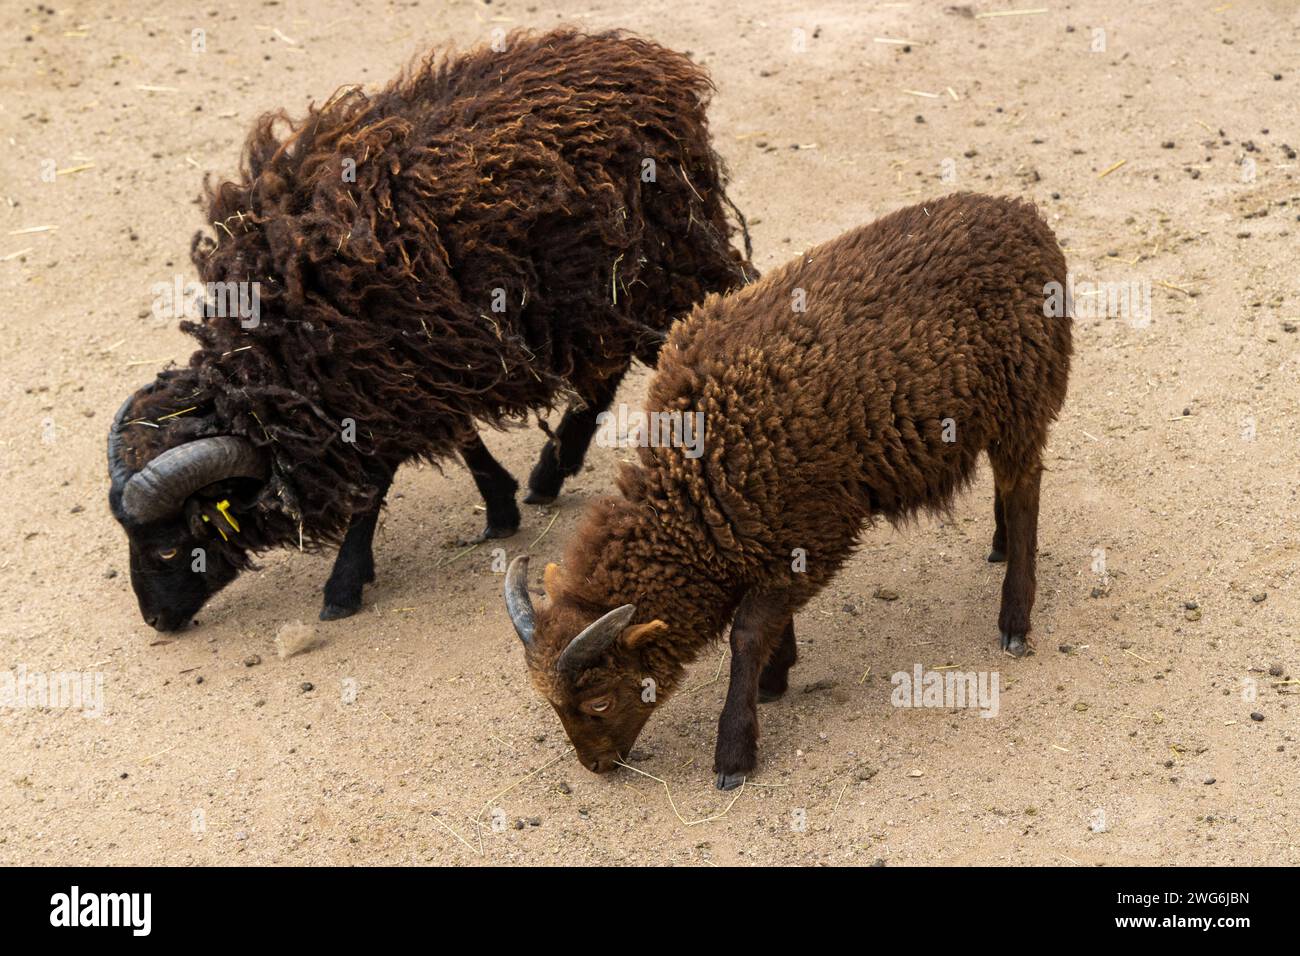 Les moutons Ouessant se nourrissent sur un sol sablonneux Banque D'Images